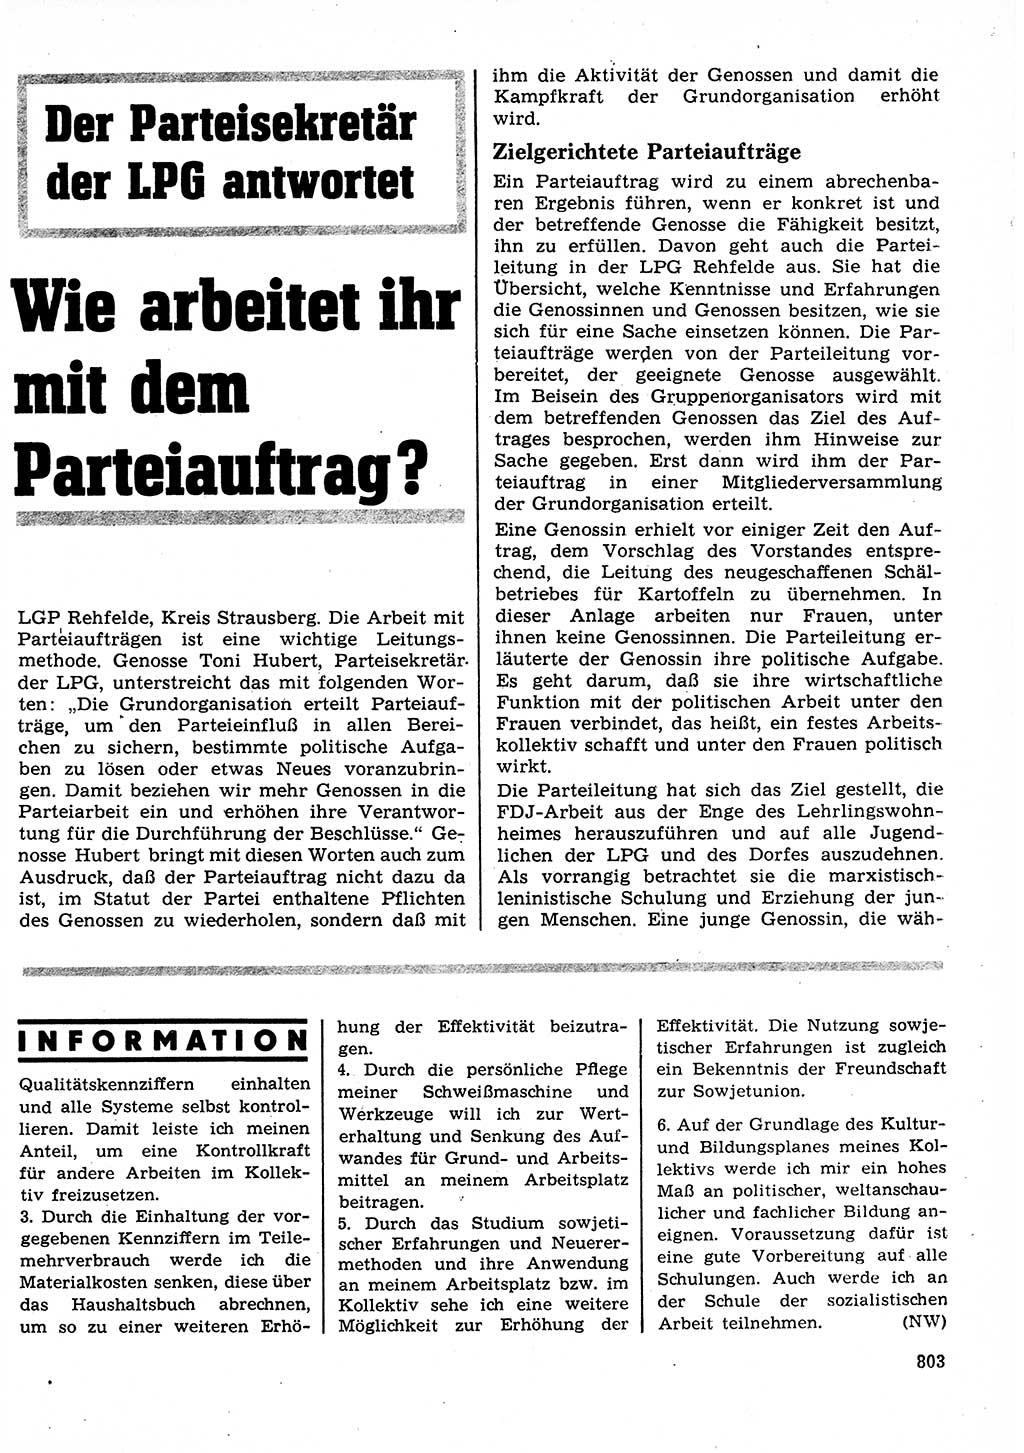 Neuer Weg (NW), Organ des Zentralkomitees (ZK) der SED (Sozialistische Einheitspartei Deutschlands) für Fragen des Parteilebens, 27. Jahrgang [Deutsche Demokratische Republik (DDR)] 1972, Seite 803 (NW ZK SED DDR 1972, S. 803)